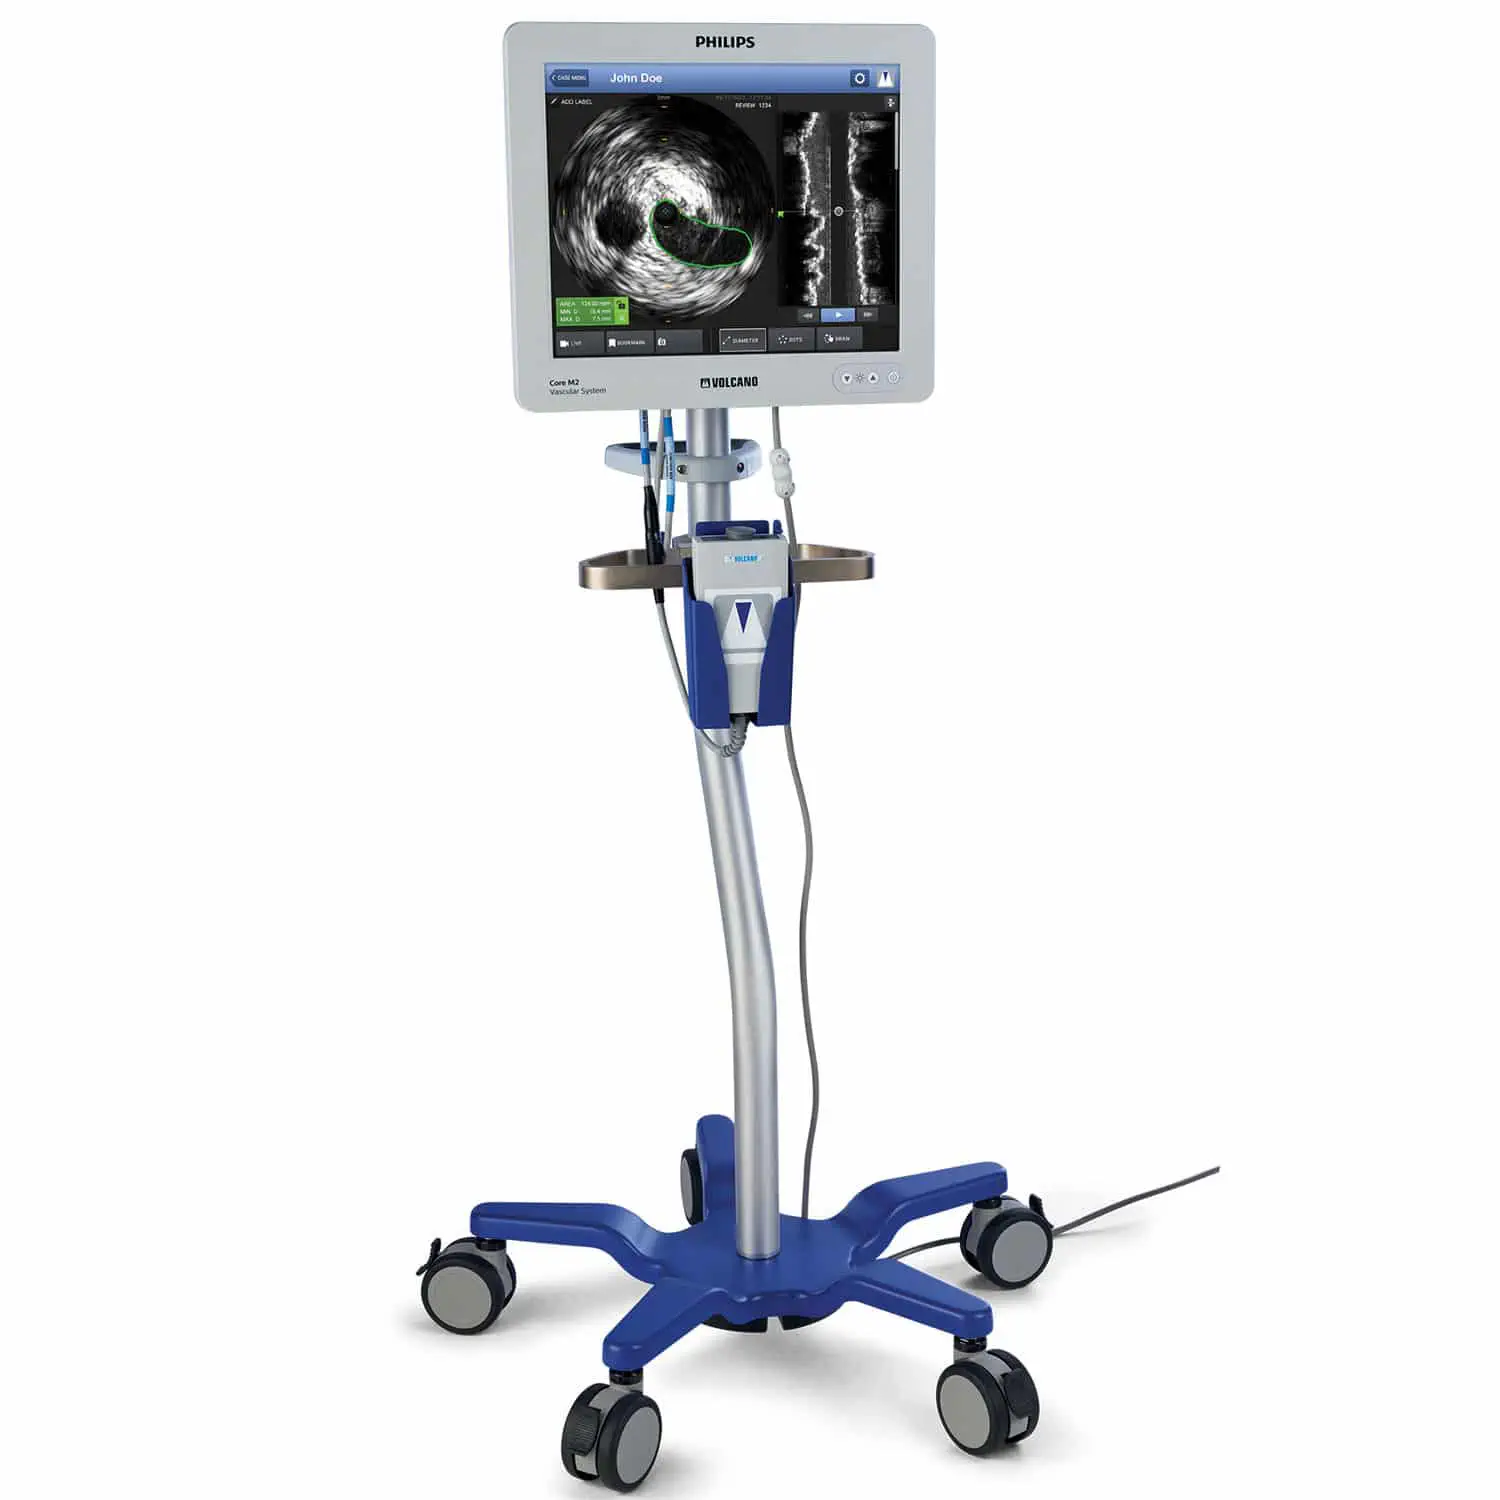 เครื่องตรวจสวนหลอดเลือดหัวใจด้วยคลื่นเสียงความถี่สูง  On-platform ultrasound system Core M2  Philips